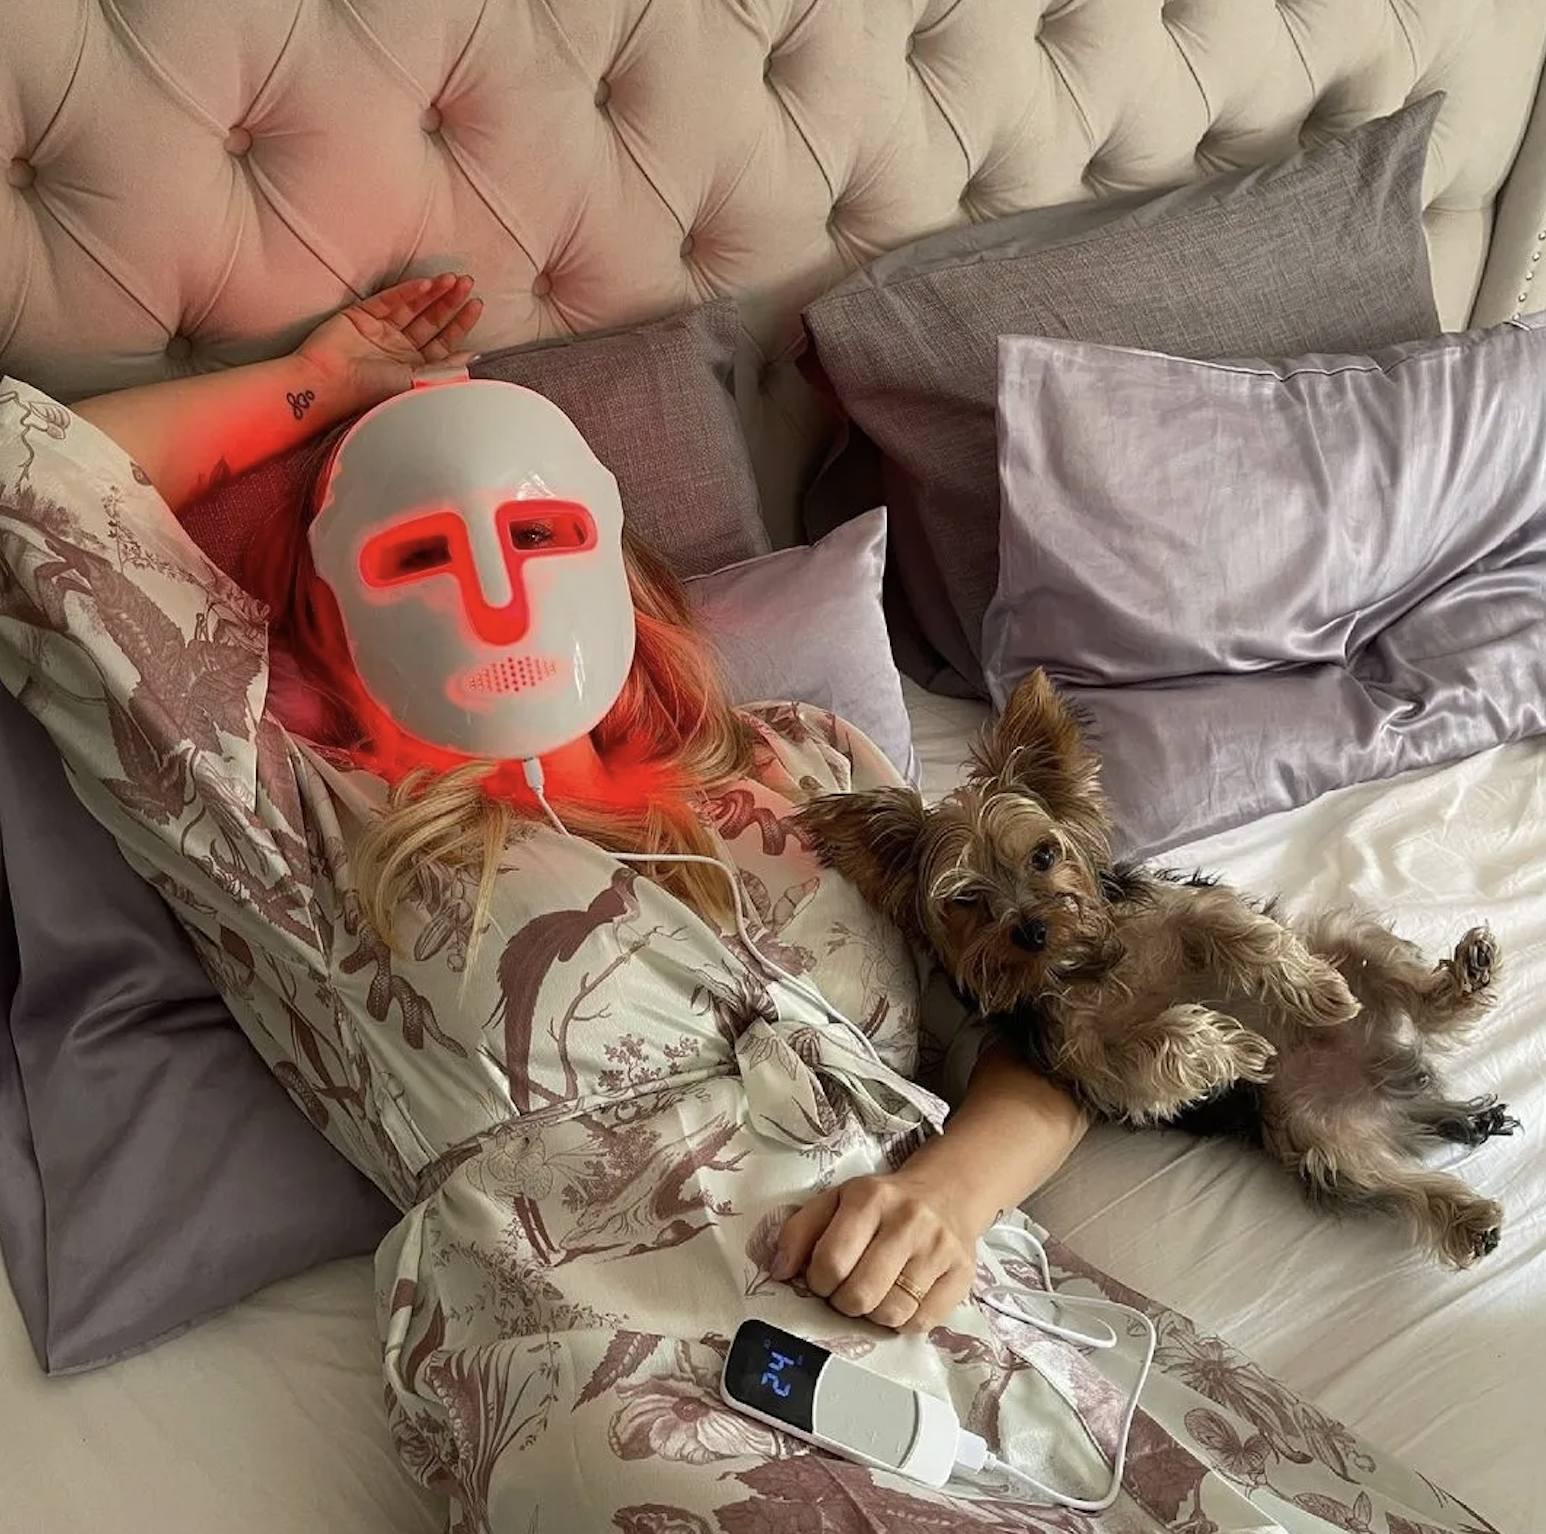  Iluminando la Belleza: Máscaras Faciales de LED y su Revolución en el Cuidado de la Piel